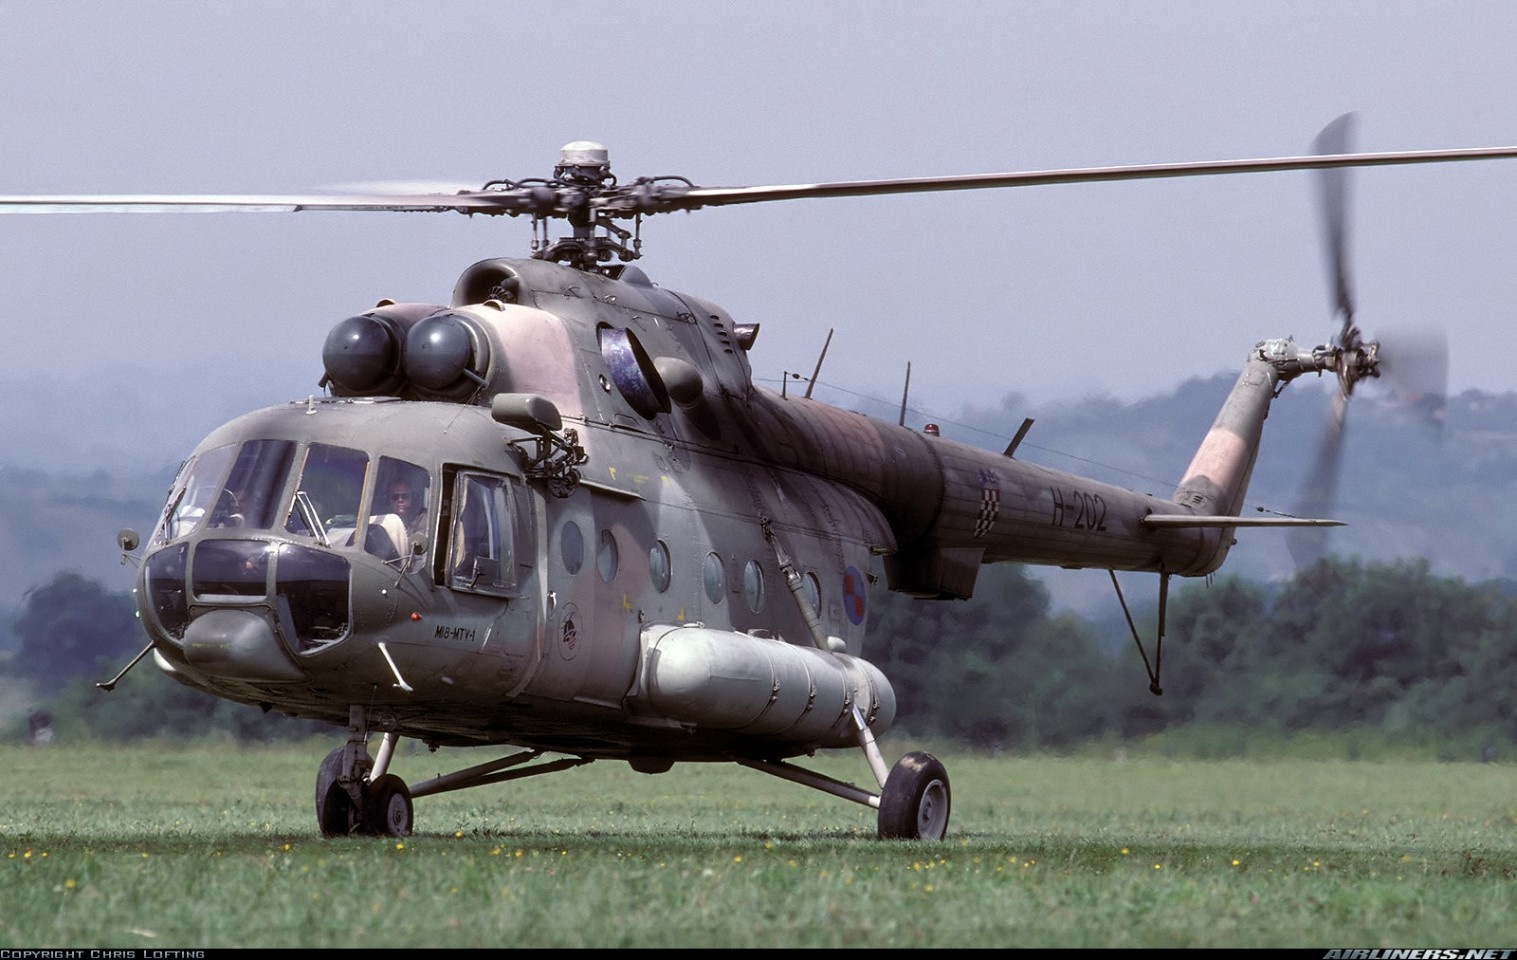 米-8/米-17"河马"直升机,是苏联直升机的经典了,至今仍在飞行之中